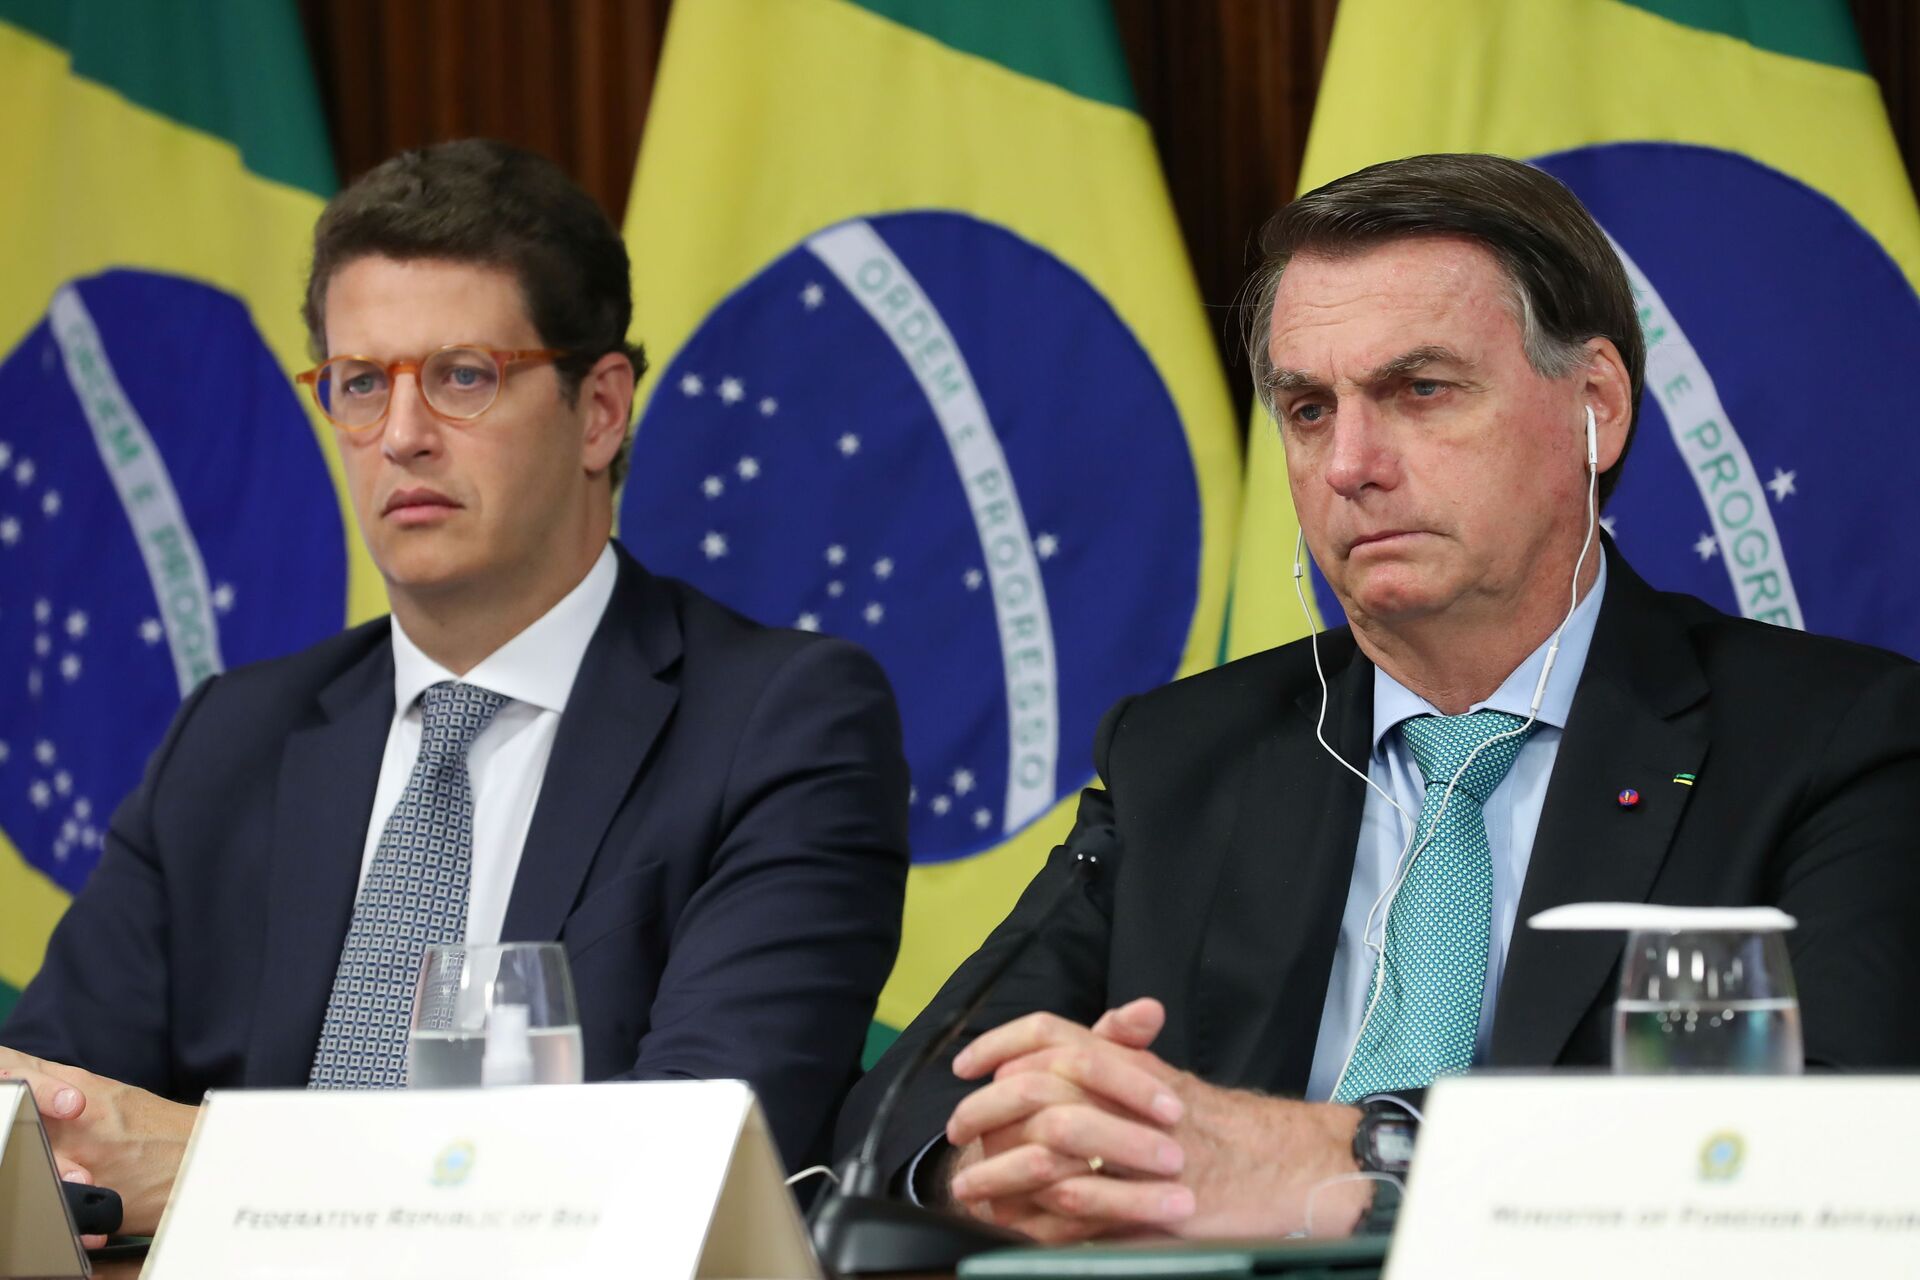 Comunidade internacional já espera 'mentiras e promessas vazias' de Bolsonaro, diz ativista - Sputnik Brasil, 1920, 22.04.2021